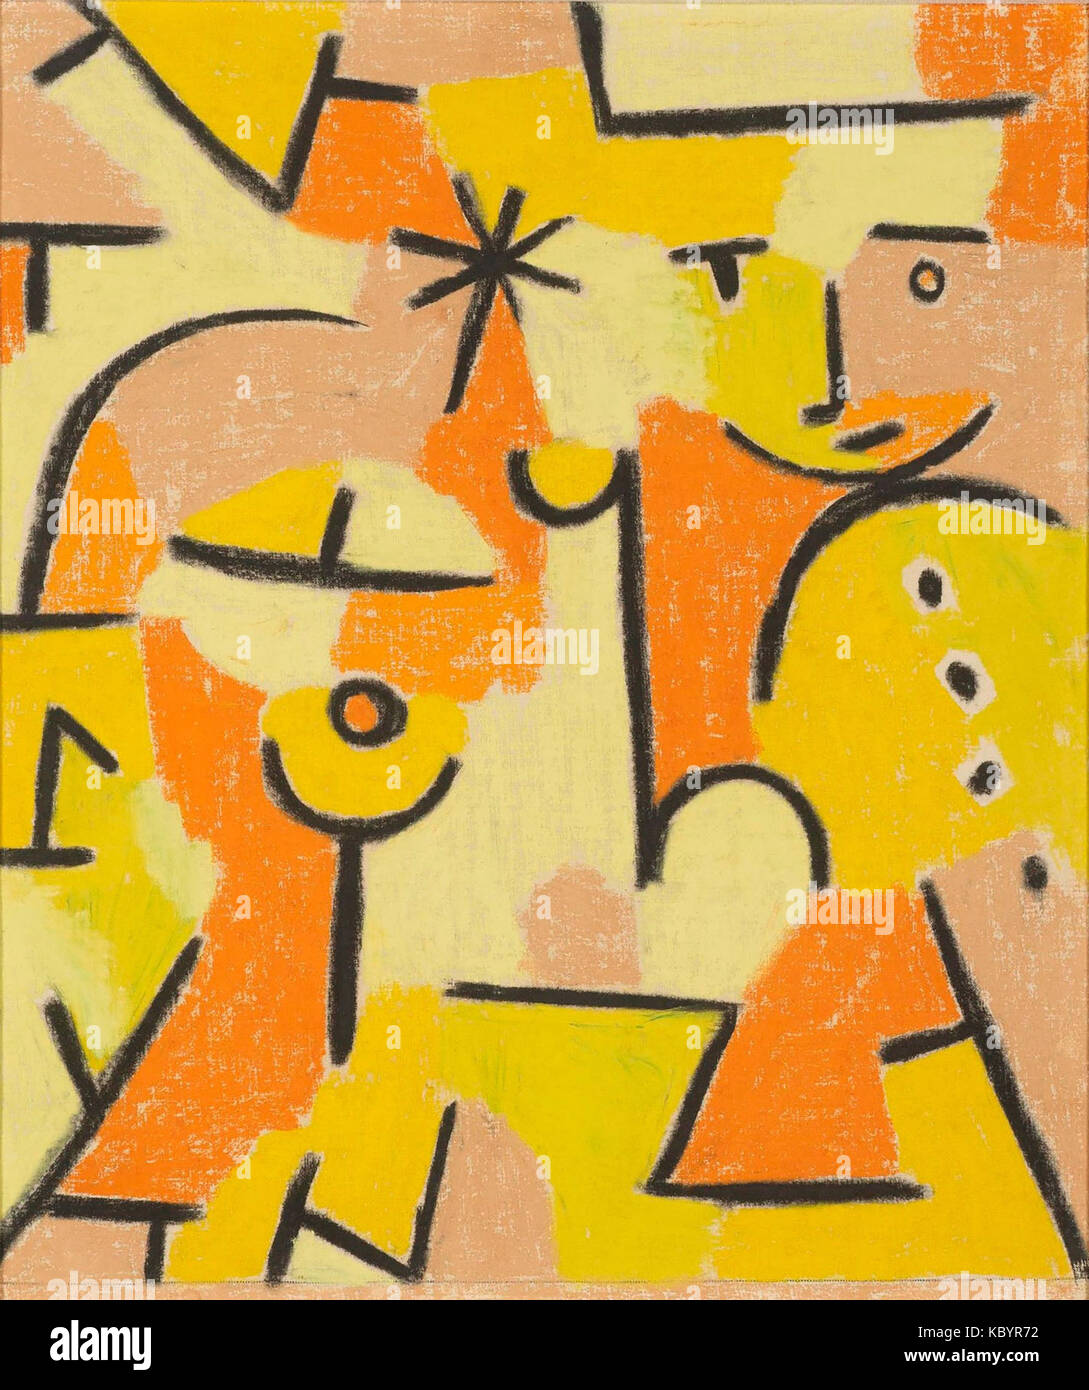 Figur in Gelb (Abbildung in gelb) von Paul Klee, 1937 Stockfoto